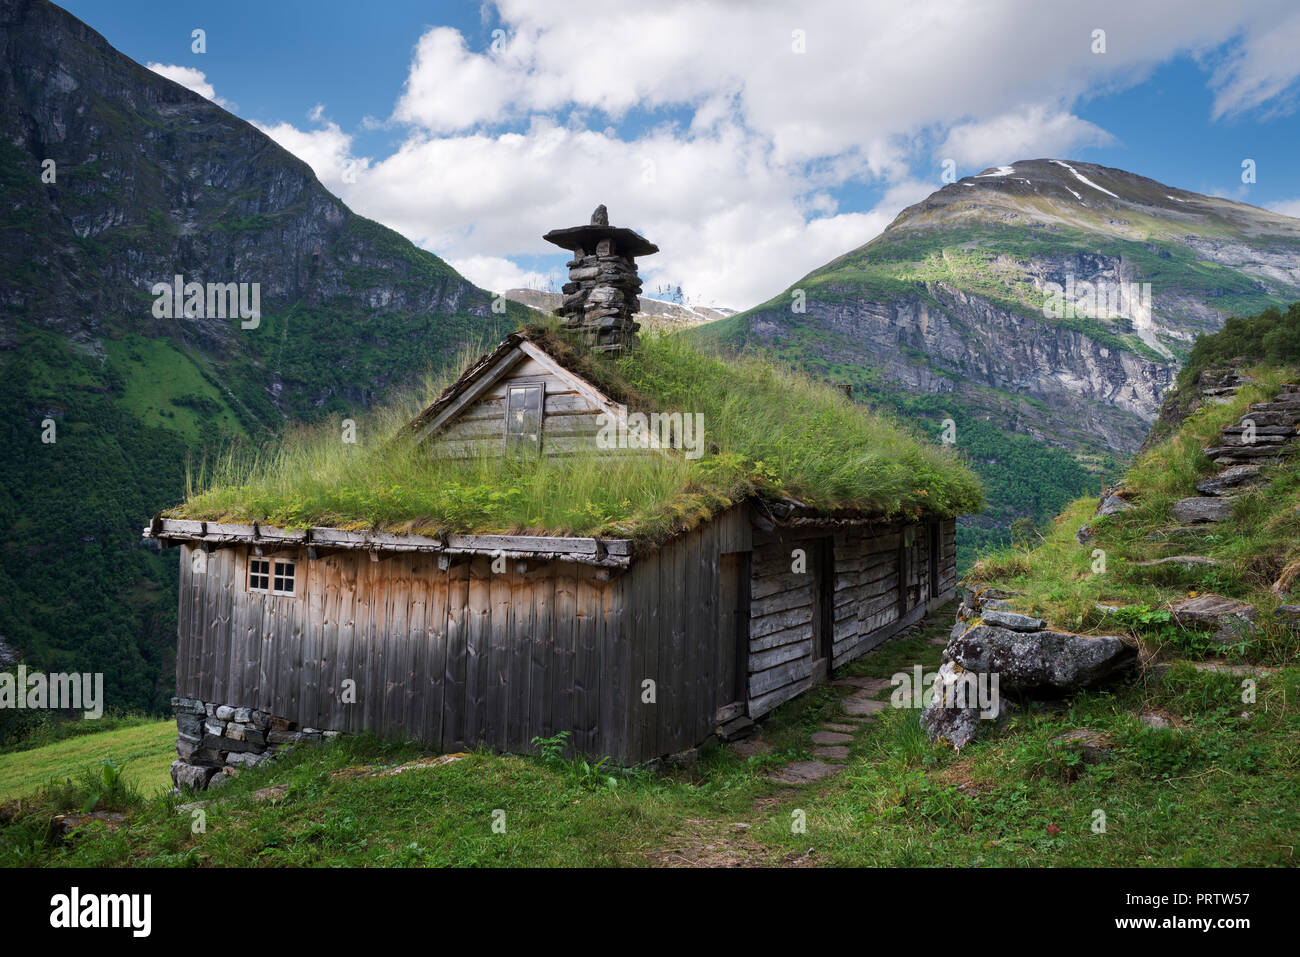 Kagefla - exploitations de montagne sur les flancs le long du fjord Geirangerfjorden. Attraction touristique de la Norvège. Maisons gazon traditionnelle scandinave Banque D'Images